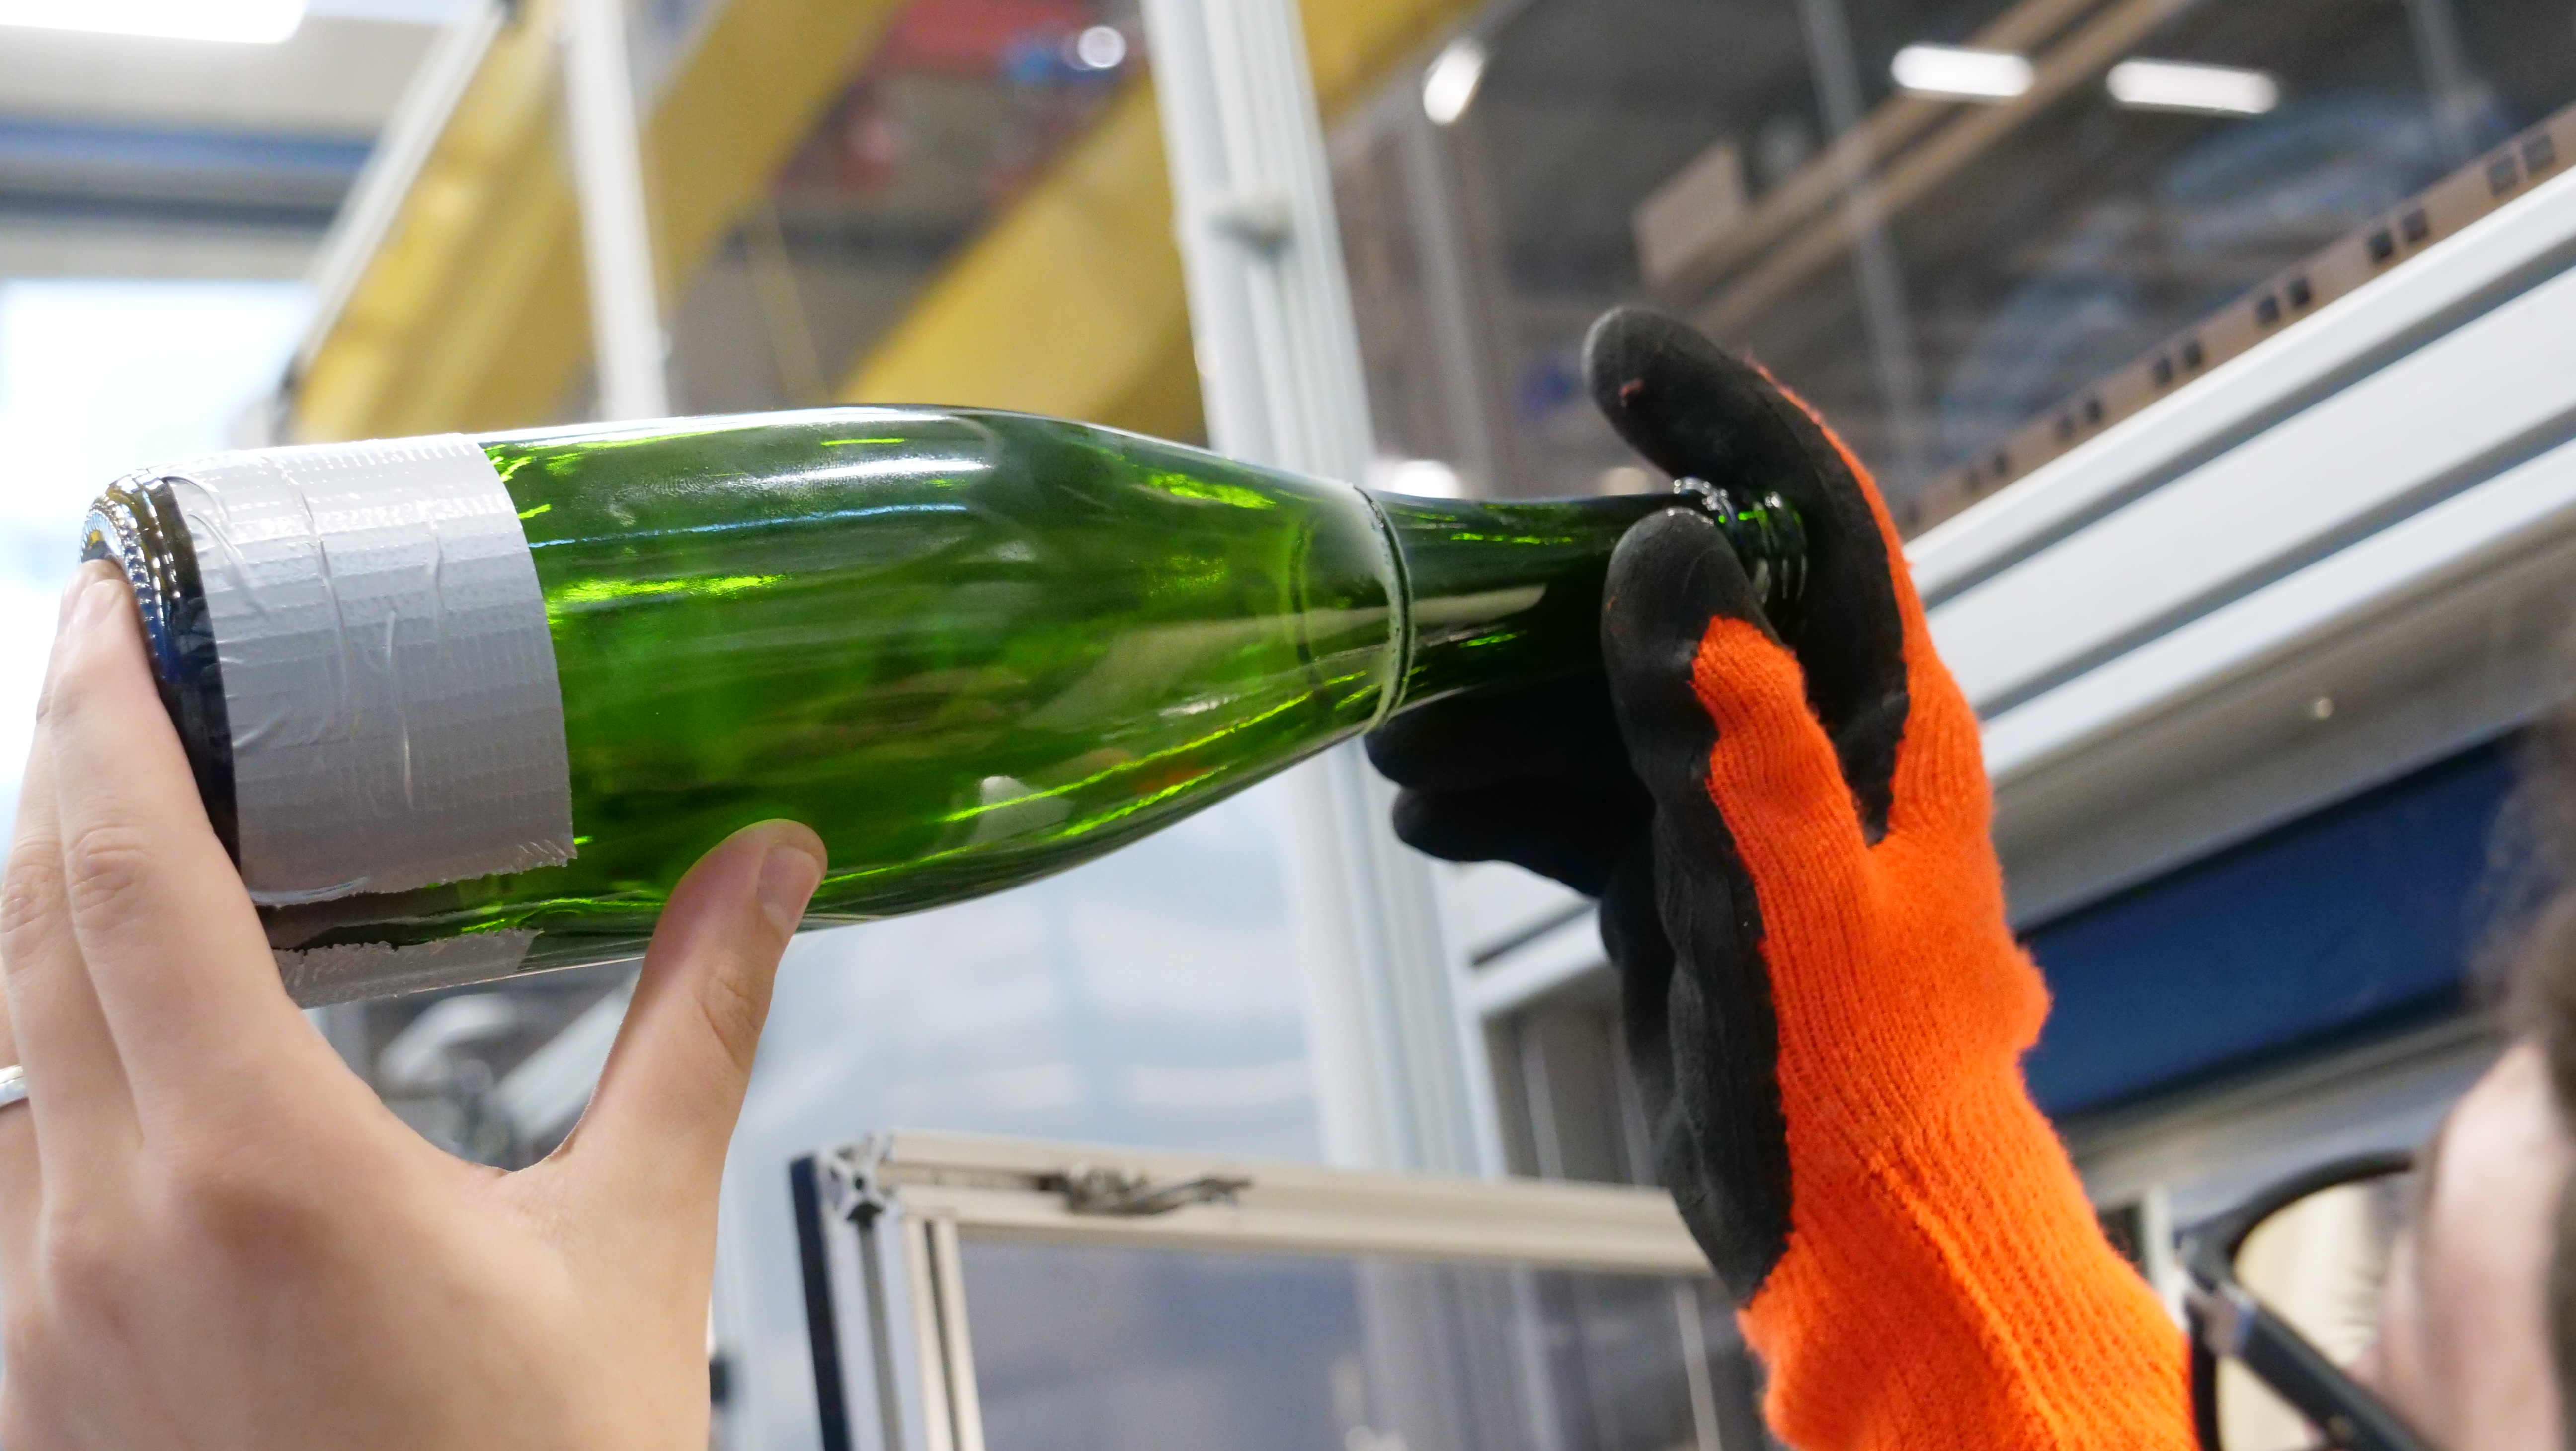 Mit dem Laser haben die Wissenschaftler:innen der Gruppe Glas die Hälse der Weinflaschen abgetrennt. 